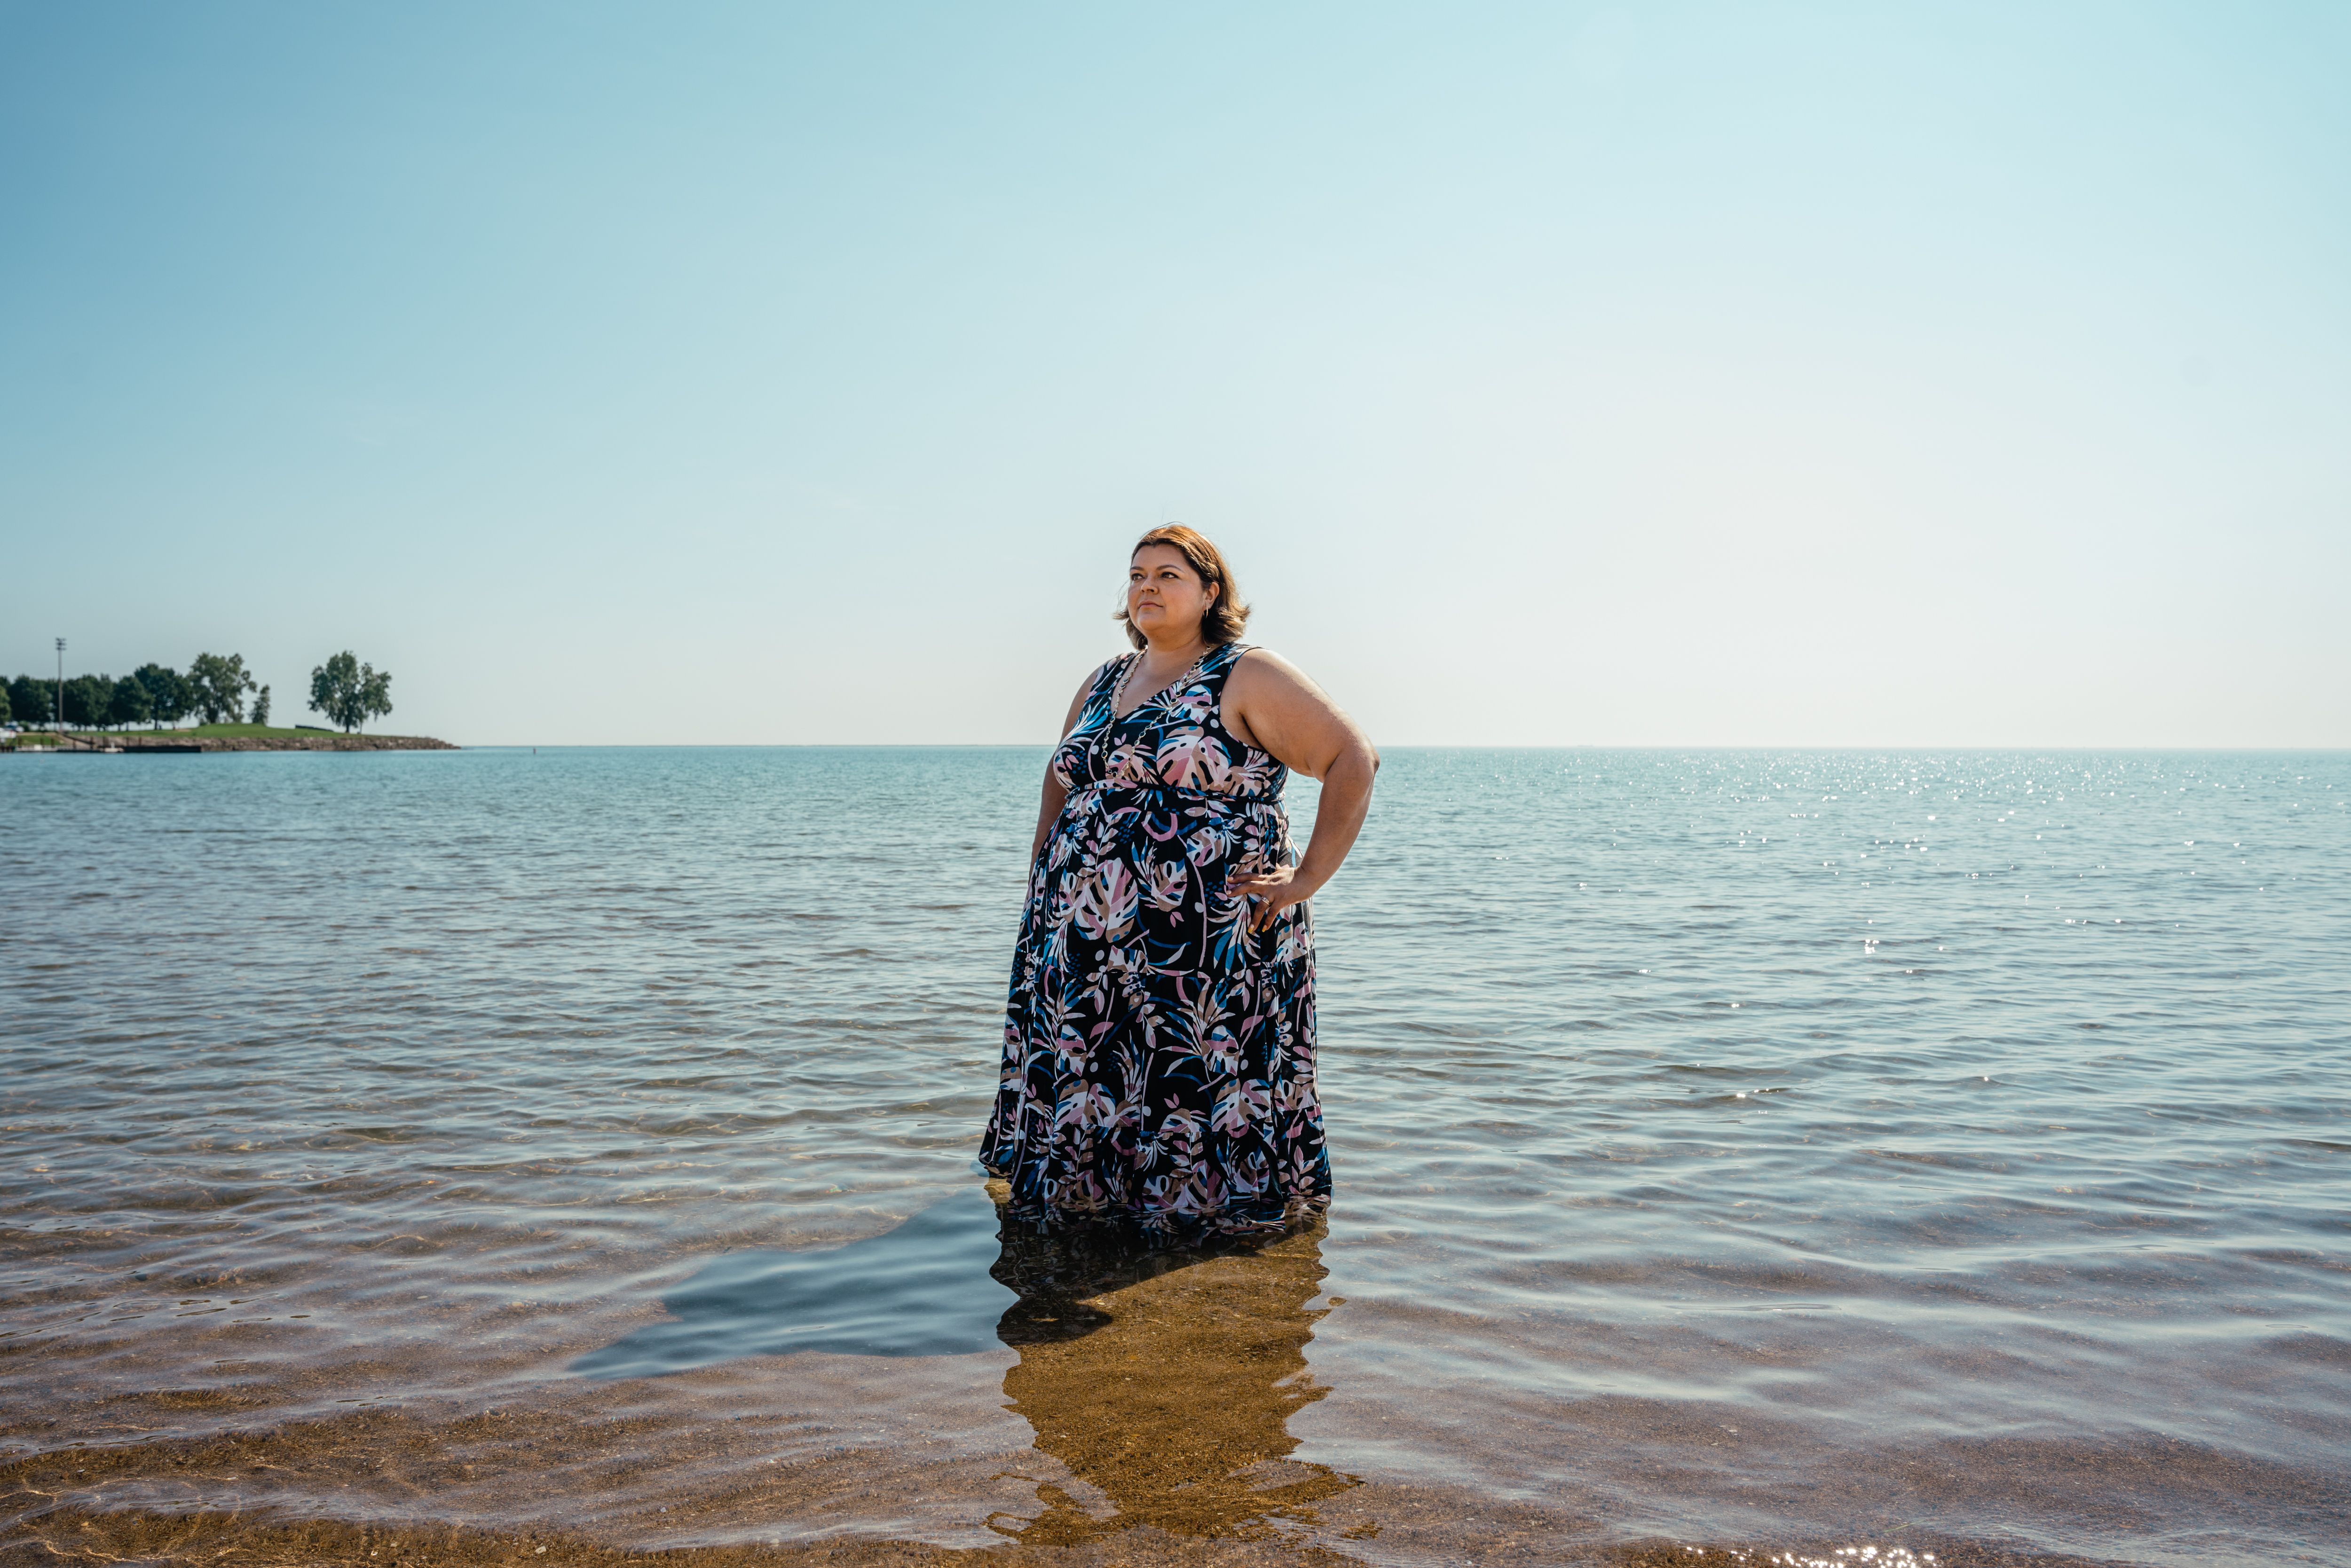 Olga Bautista at Calumet Beach, standing in Lake Michigan in 2021 in a flowing dress